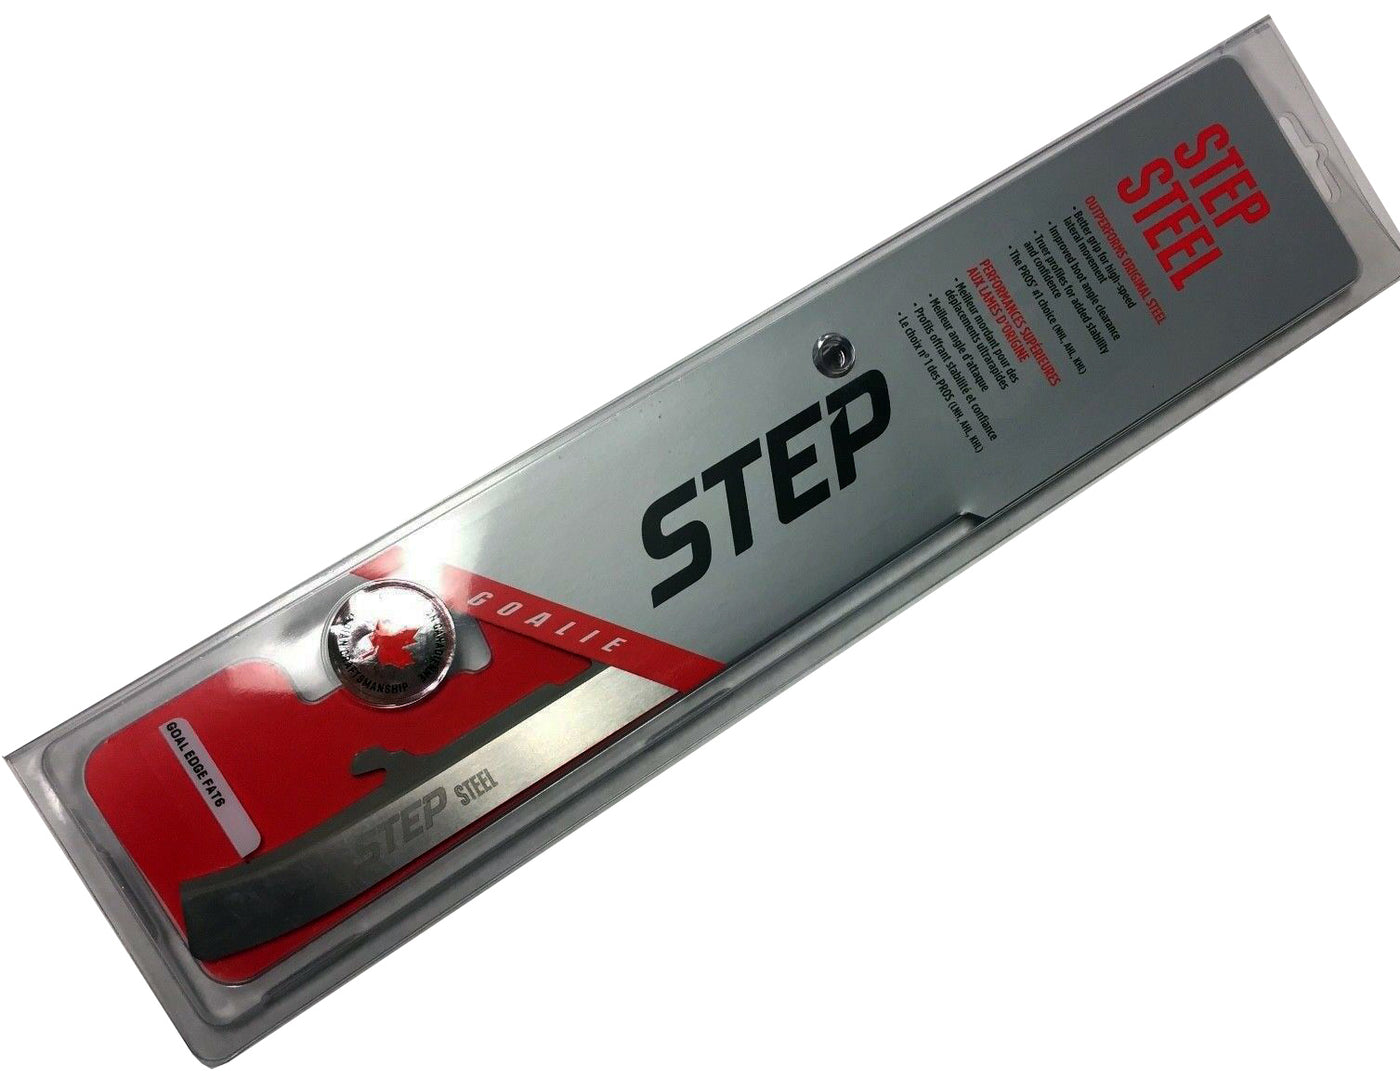 Step Steel FAT 4MM Goalie Skate Blades for Bauer Vertexx Edge